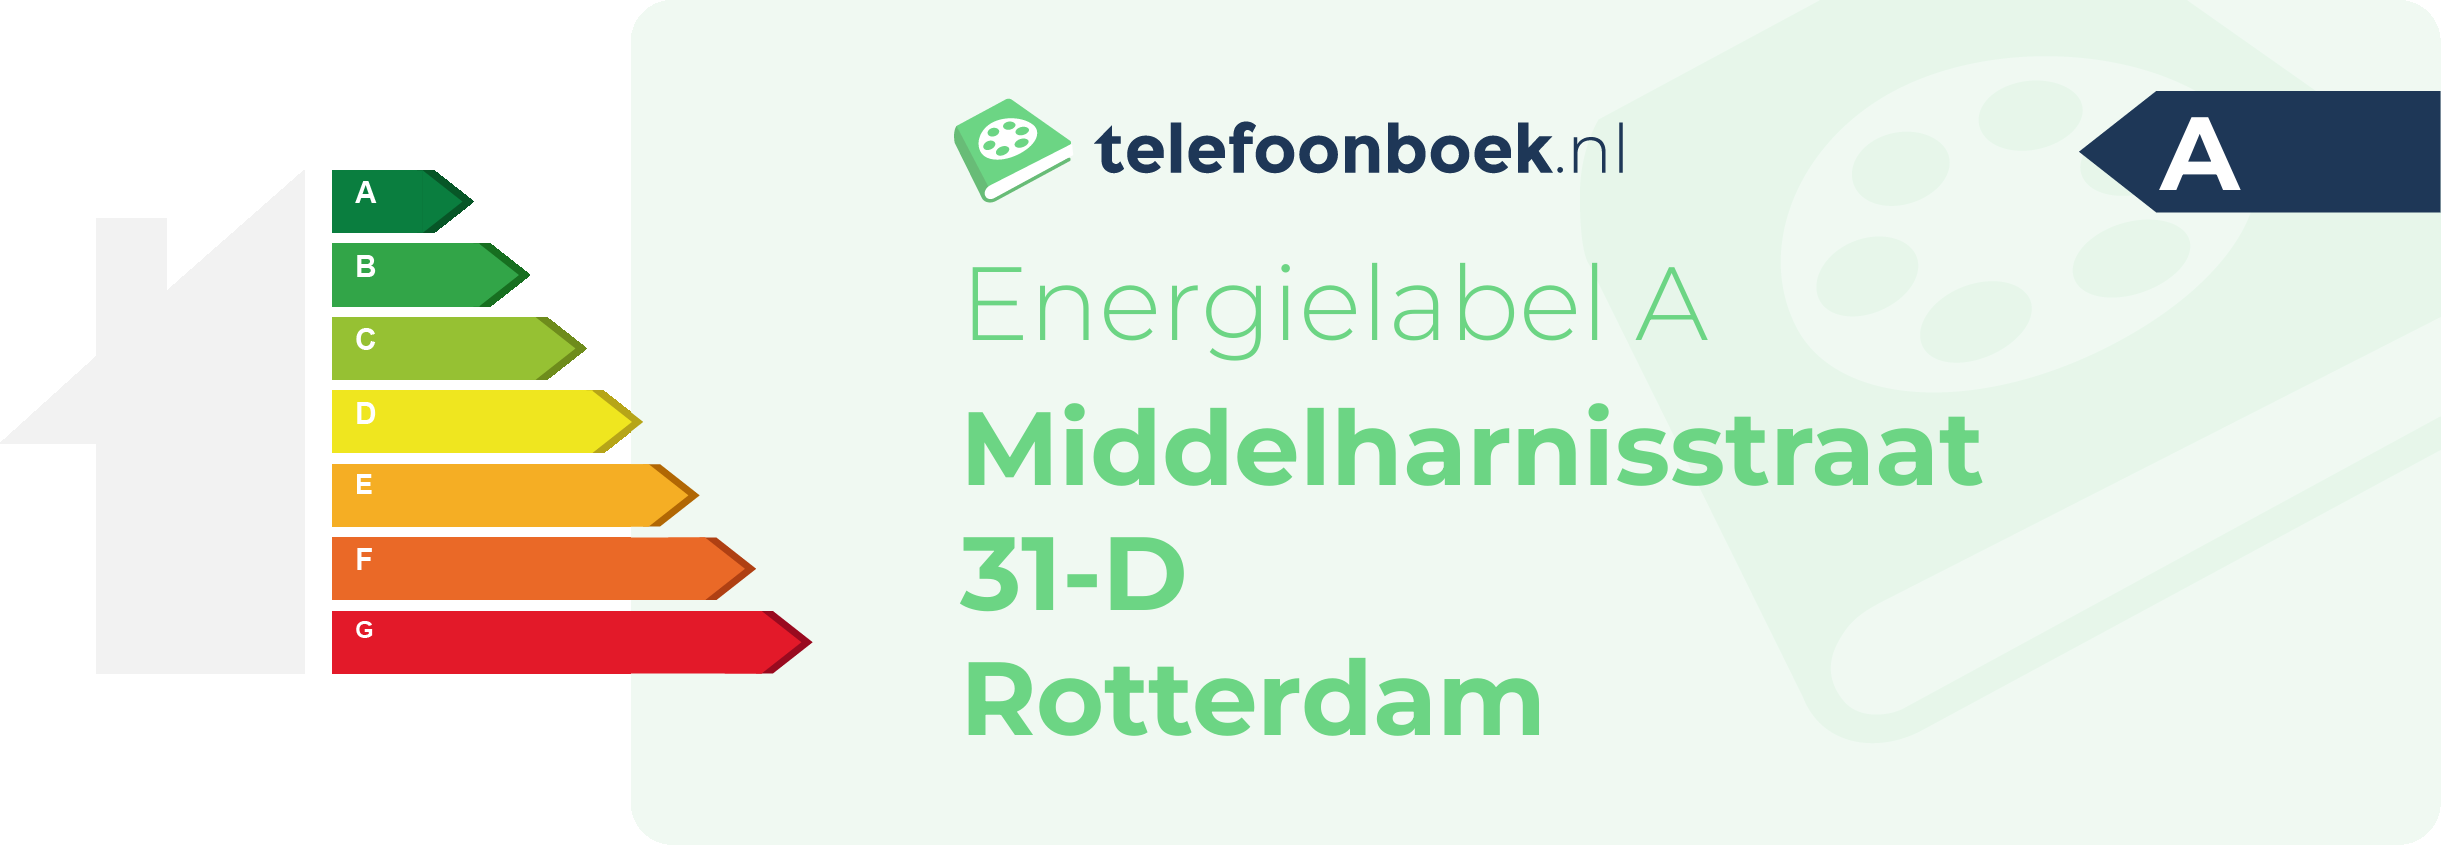 Energielabel Middelharnisstraat 31-D Rotterdam